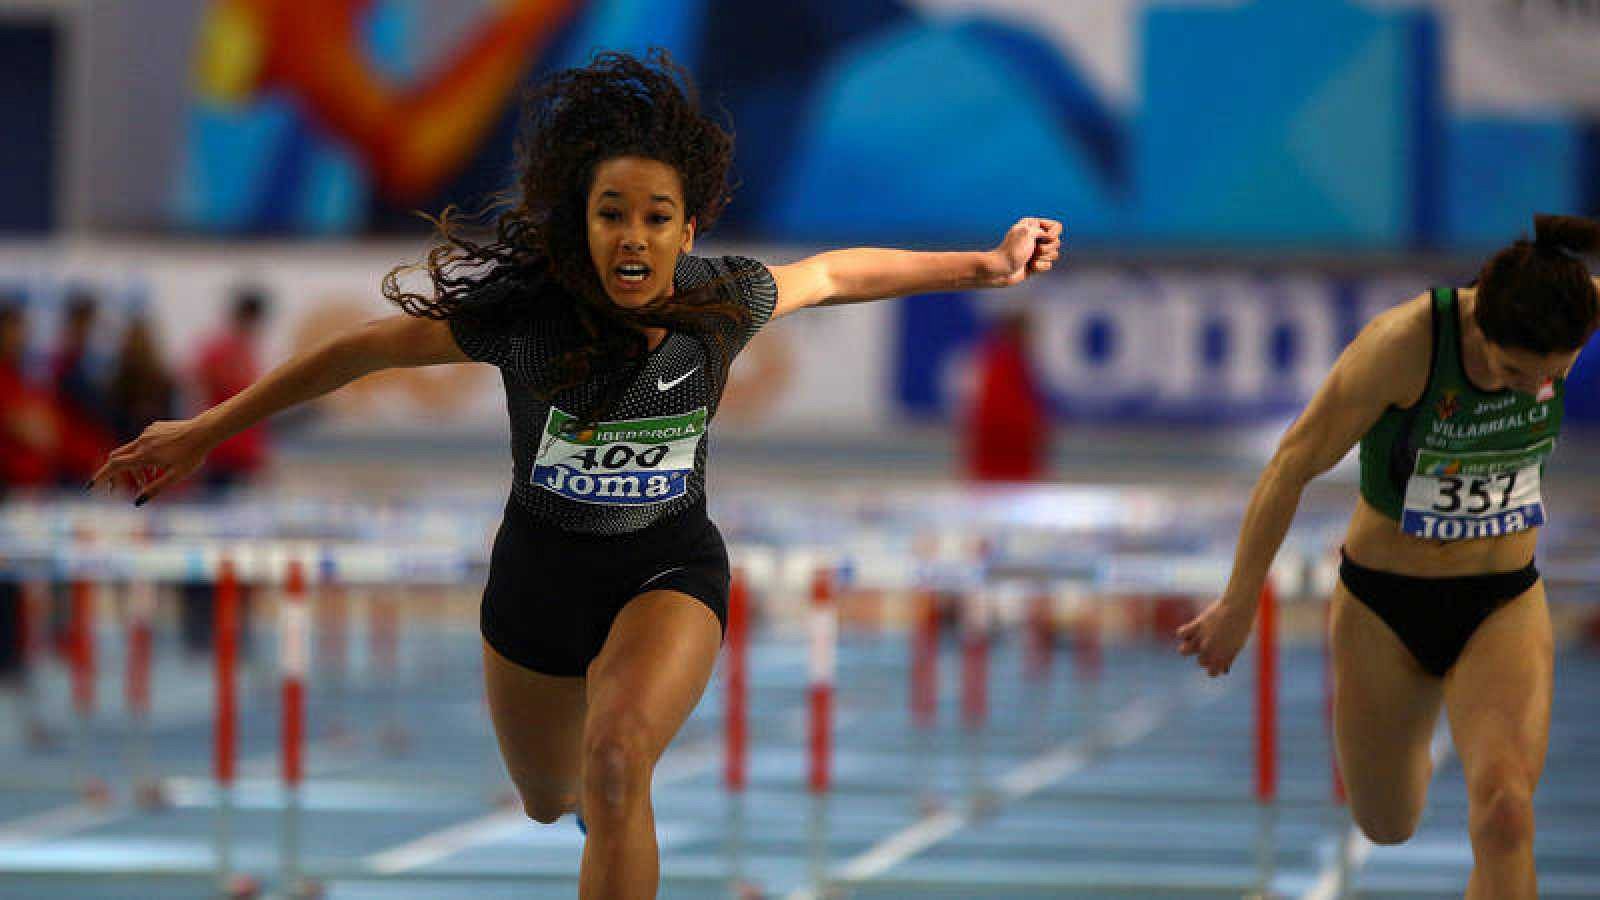 Atletismo | Salma Paralluelo y María Vicente destacan en los Campeonatos de España de Pista Cubierta - RTVE.es